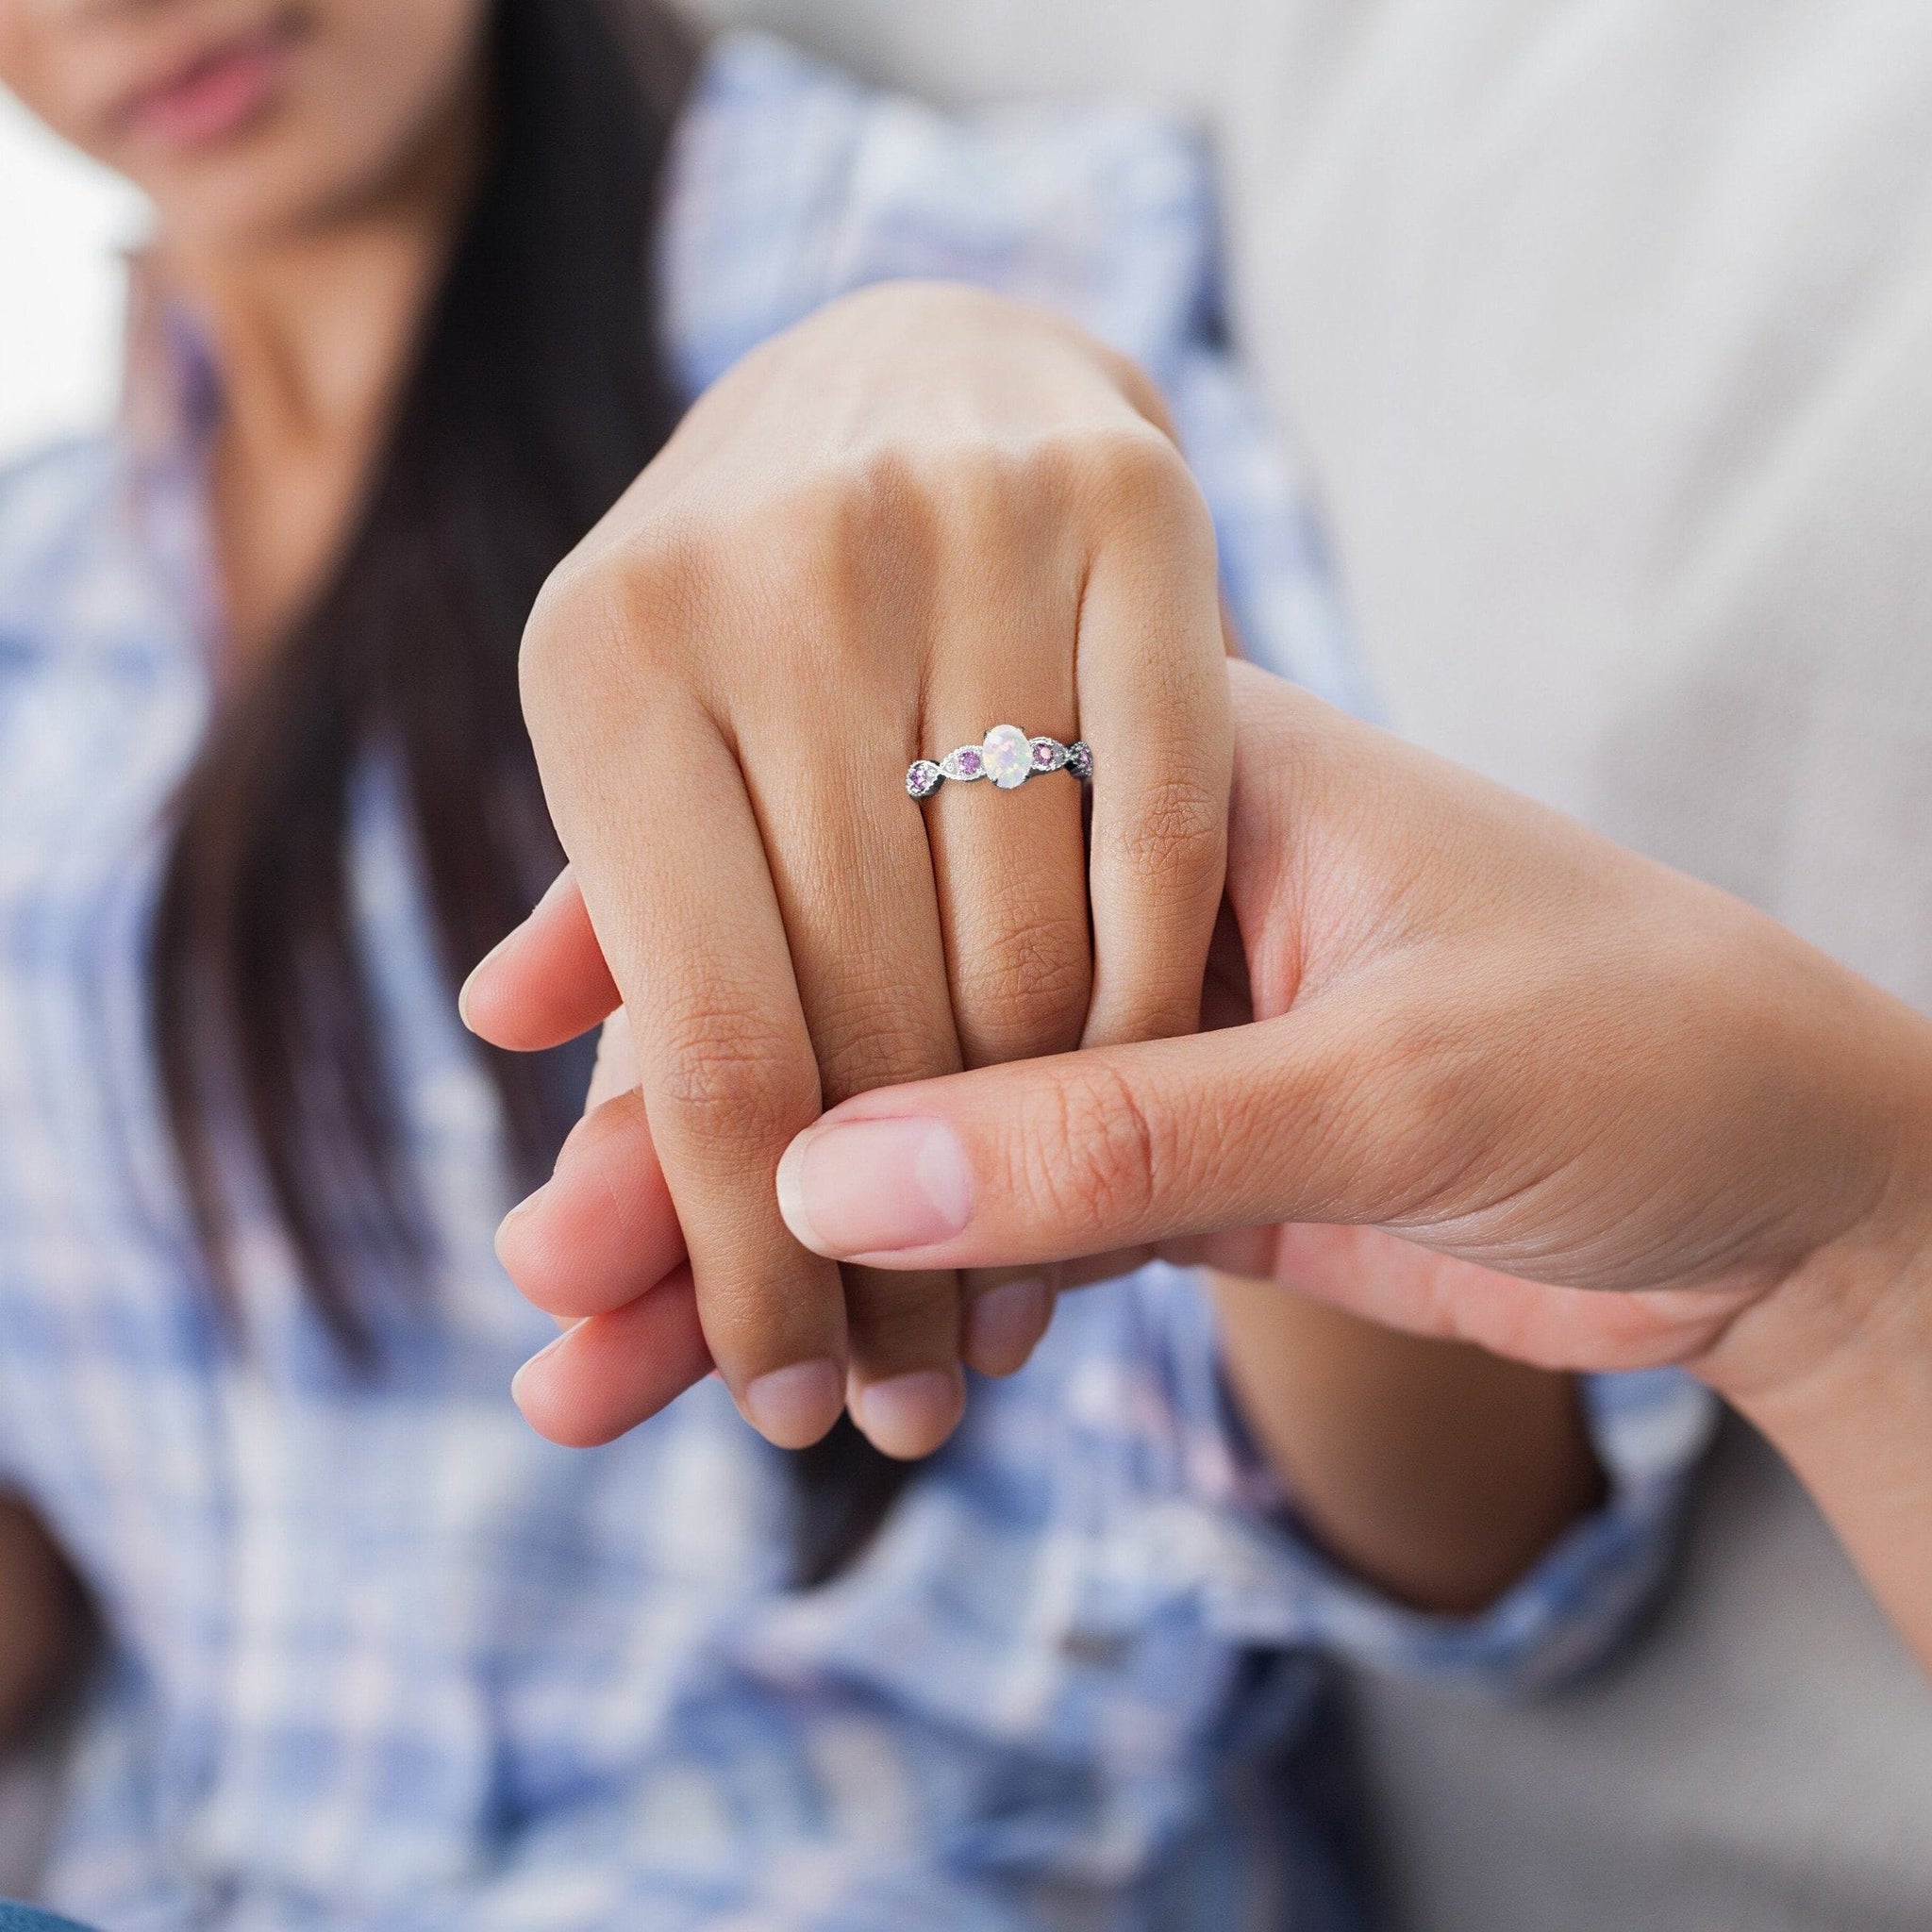 Получить кольцо в подарок. Кольцо для Помолвки. Кольцо для предложения девушке. Кольцо на руке девушки. Кольцо на пальце.